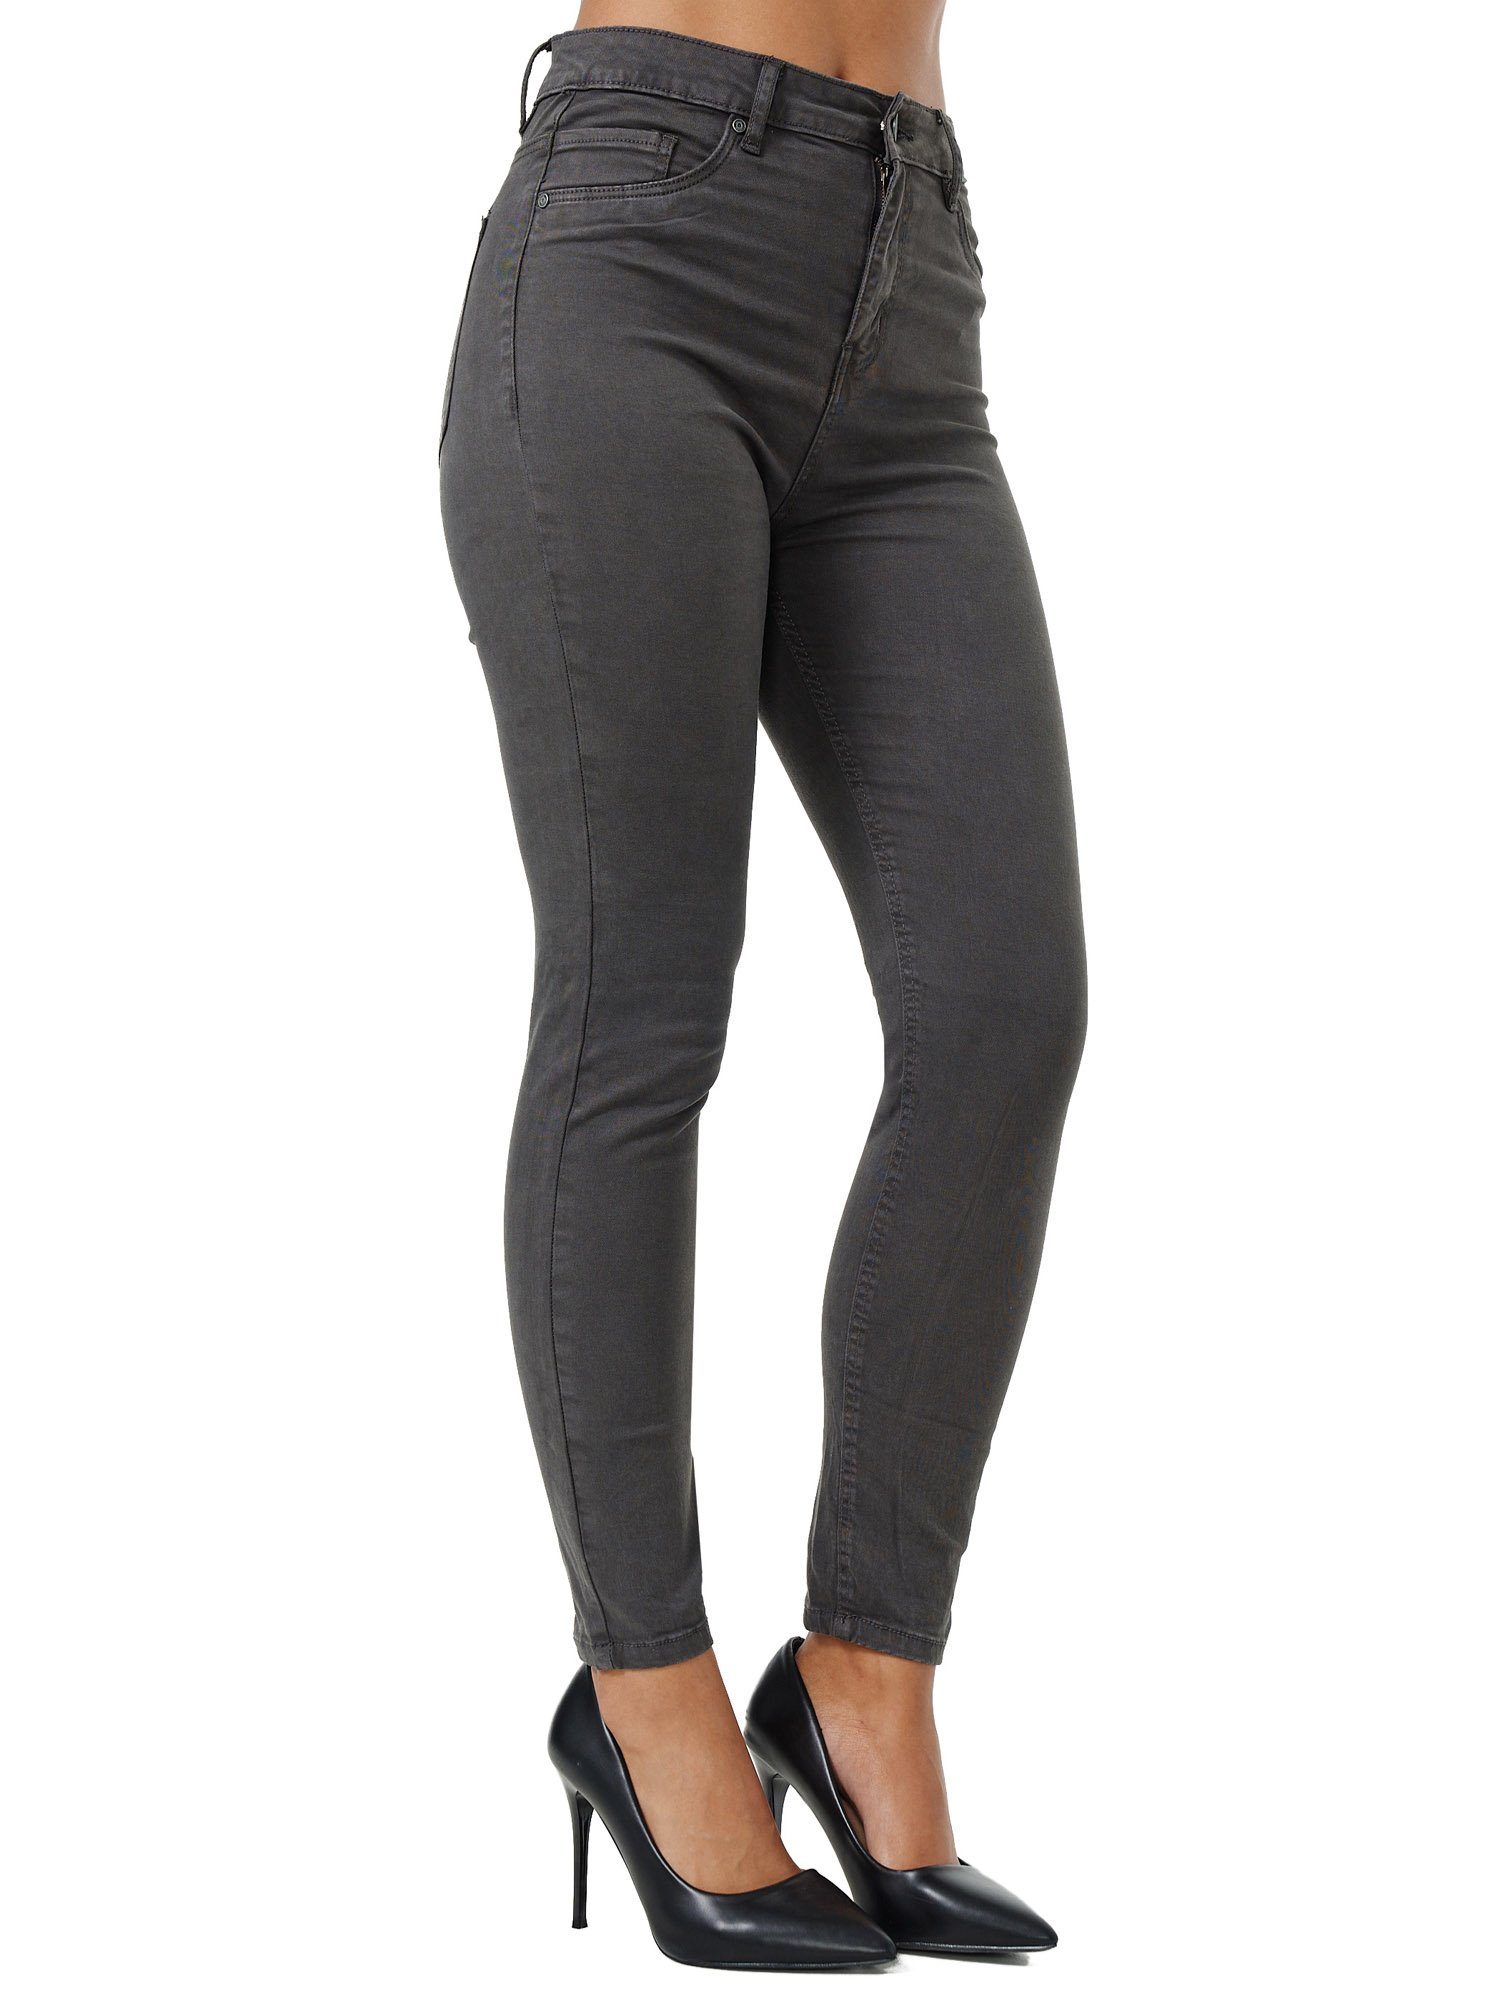 Tazzio Skinny-fit-Jeans F103 Damen Jeanshose anthrazit High Rise